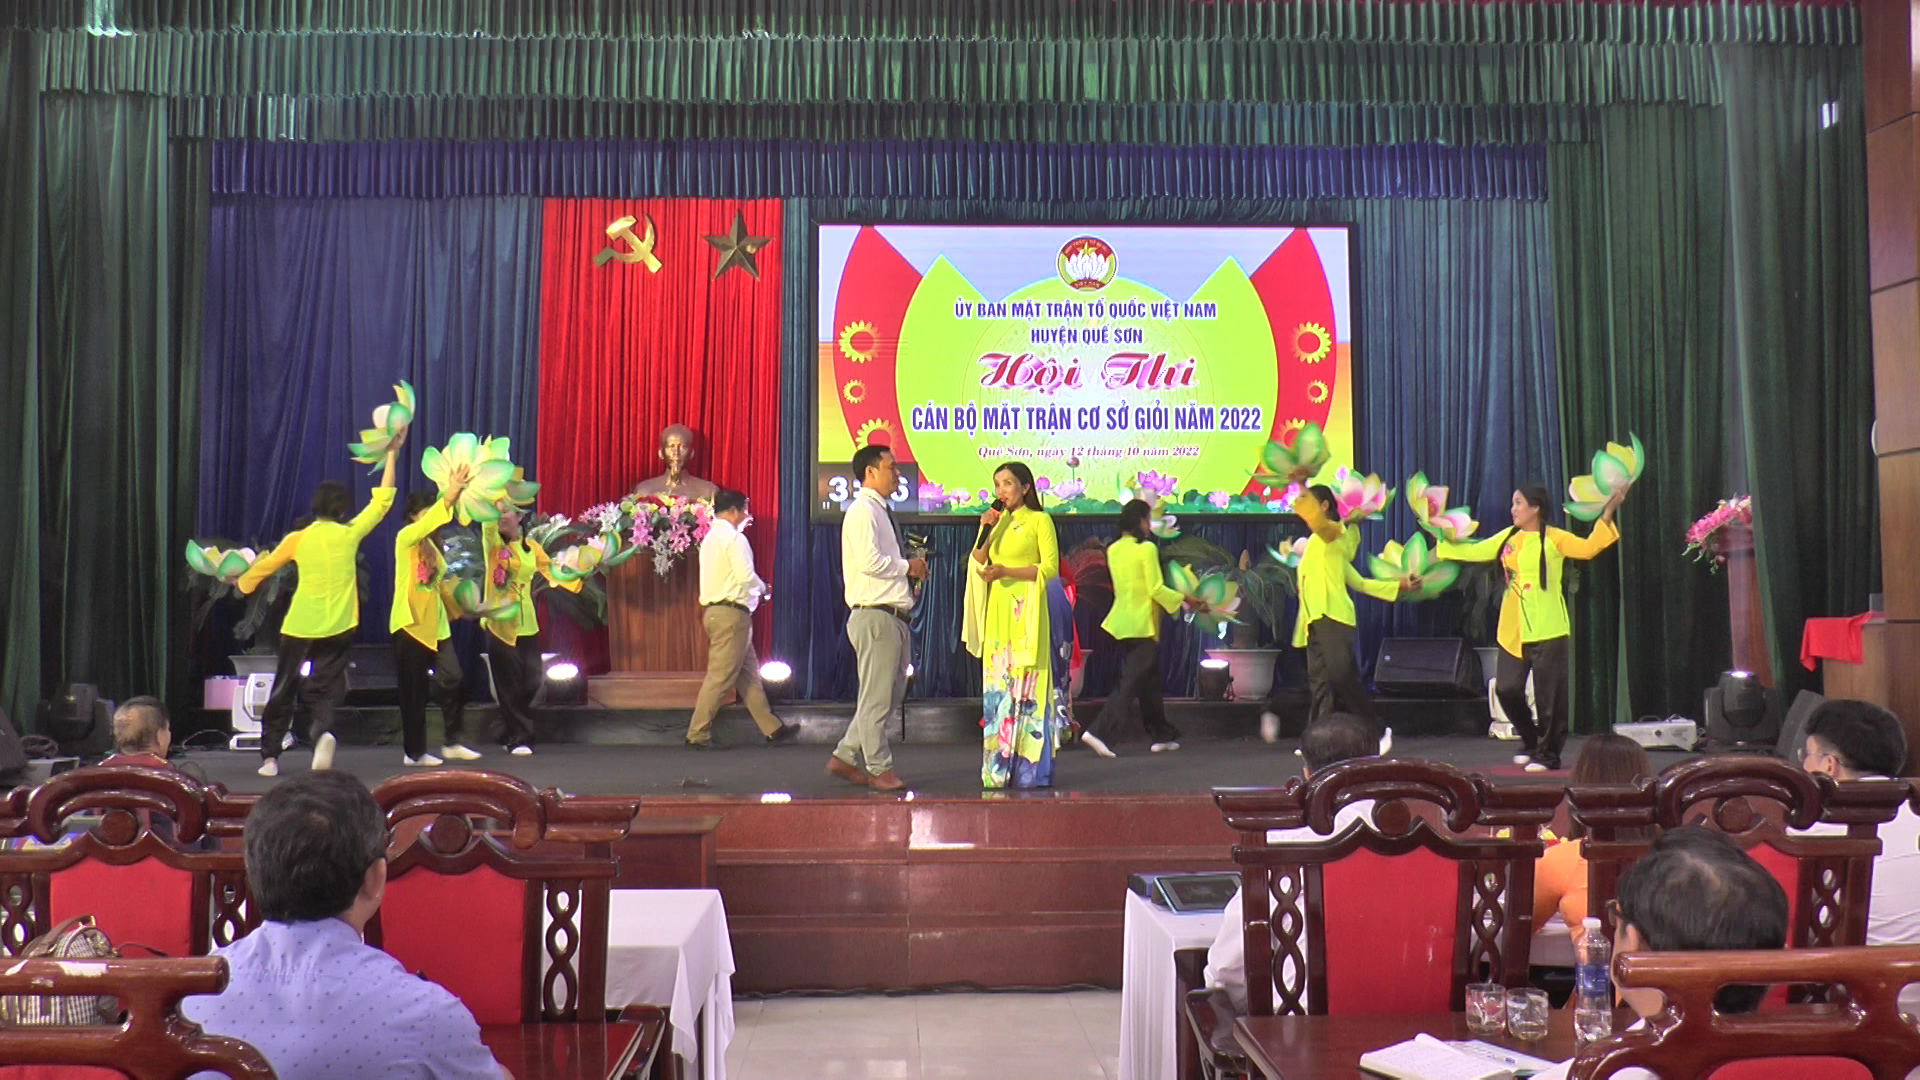 Hội thi Cán bộ Mặt trận cơ sở giỏi huyện Quế Sơn năm 2022